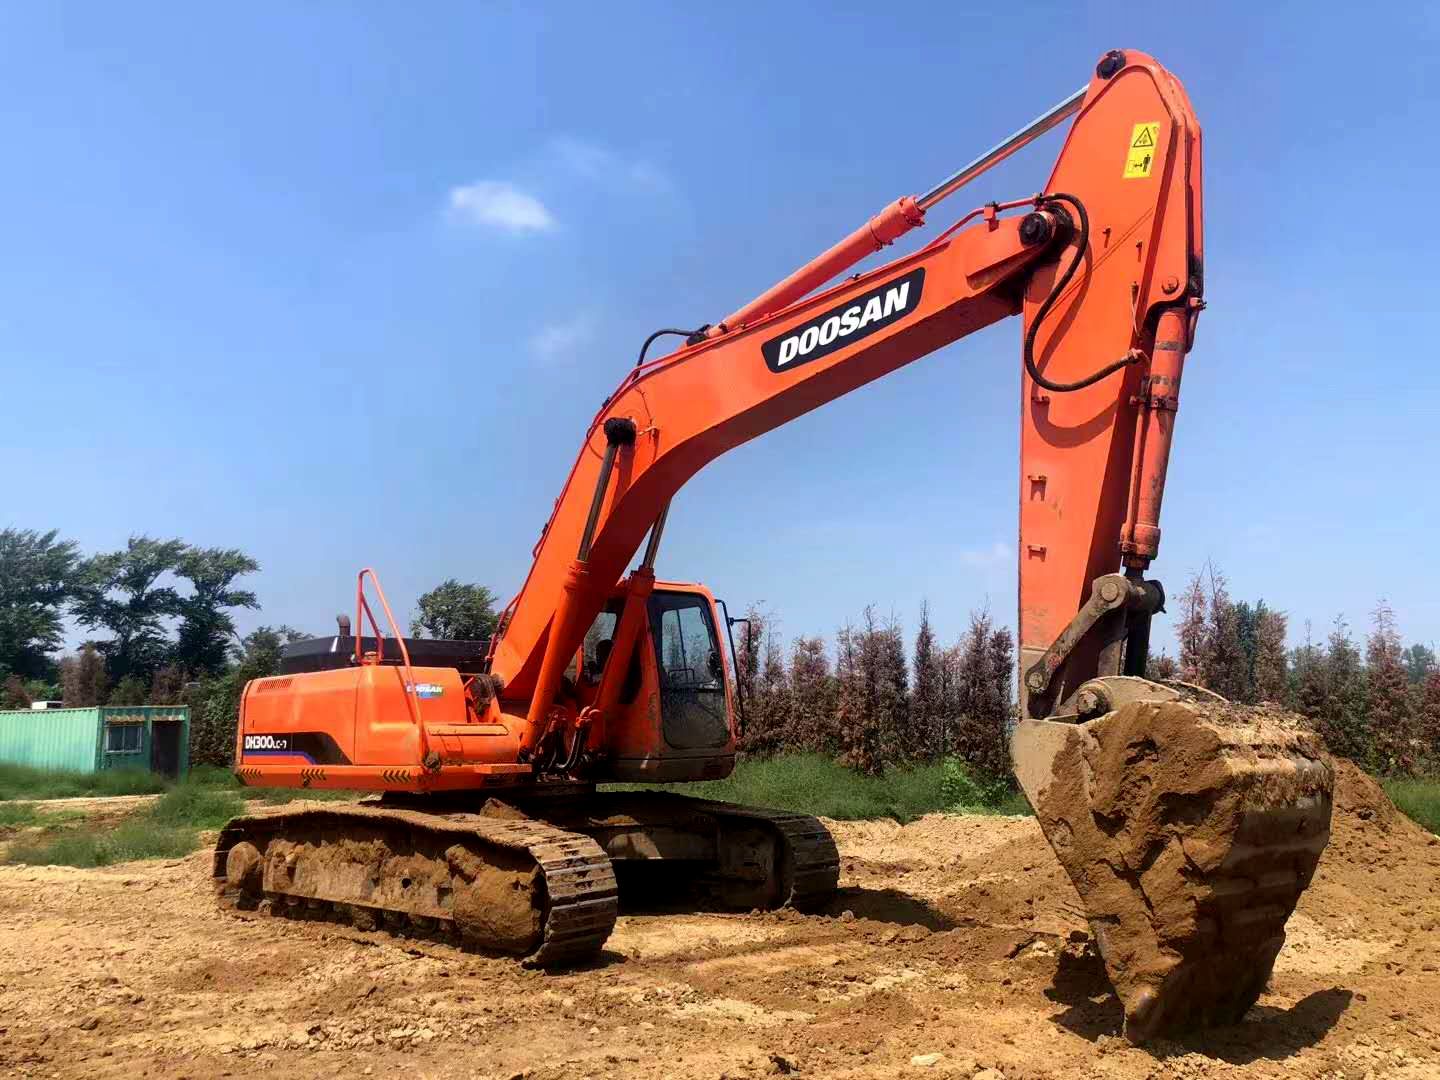 Doosan DH300LC-7 excavator